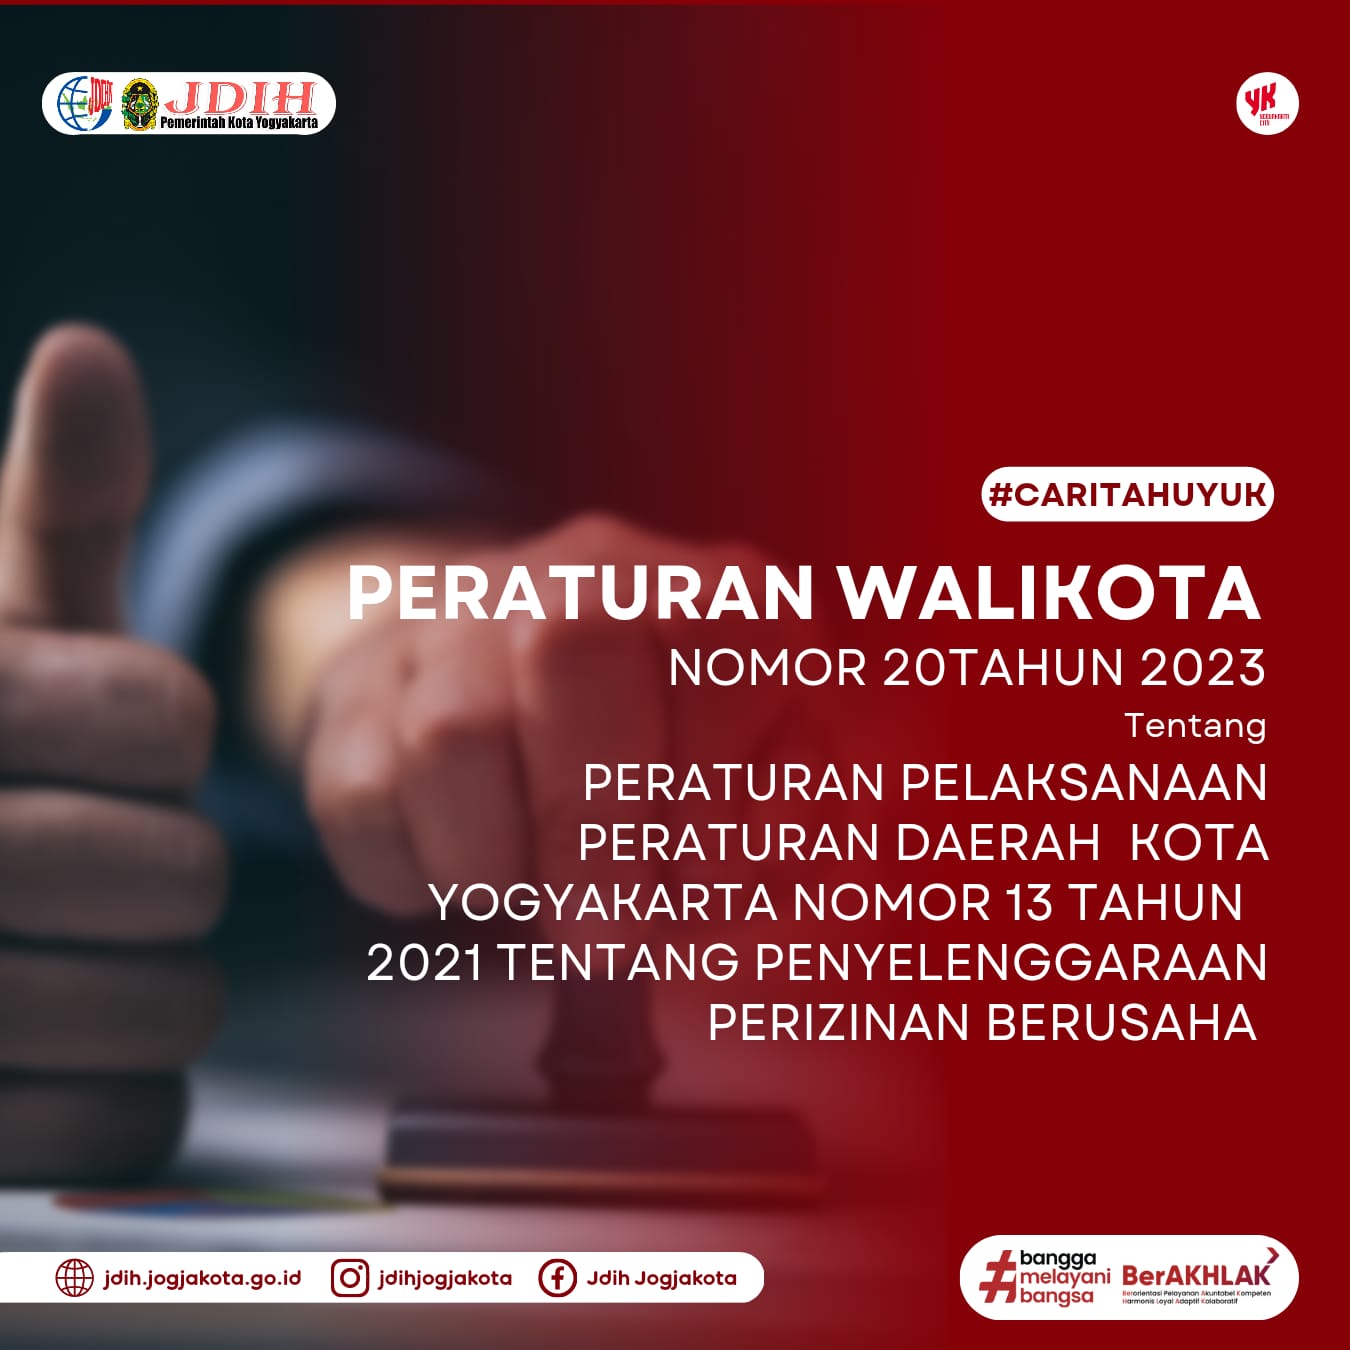 Penetapan Peraturan Walikota Yogyakarta Nomor 20 Tahun 2023